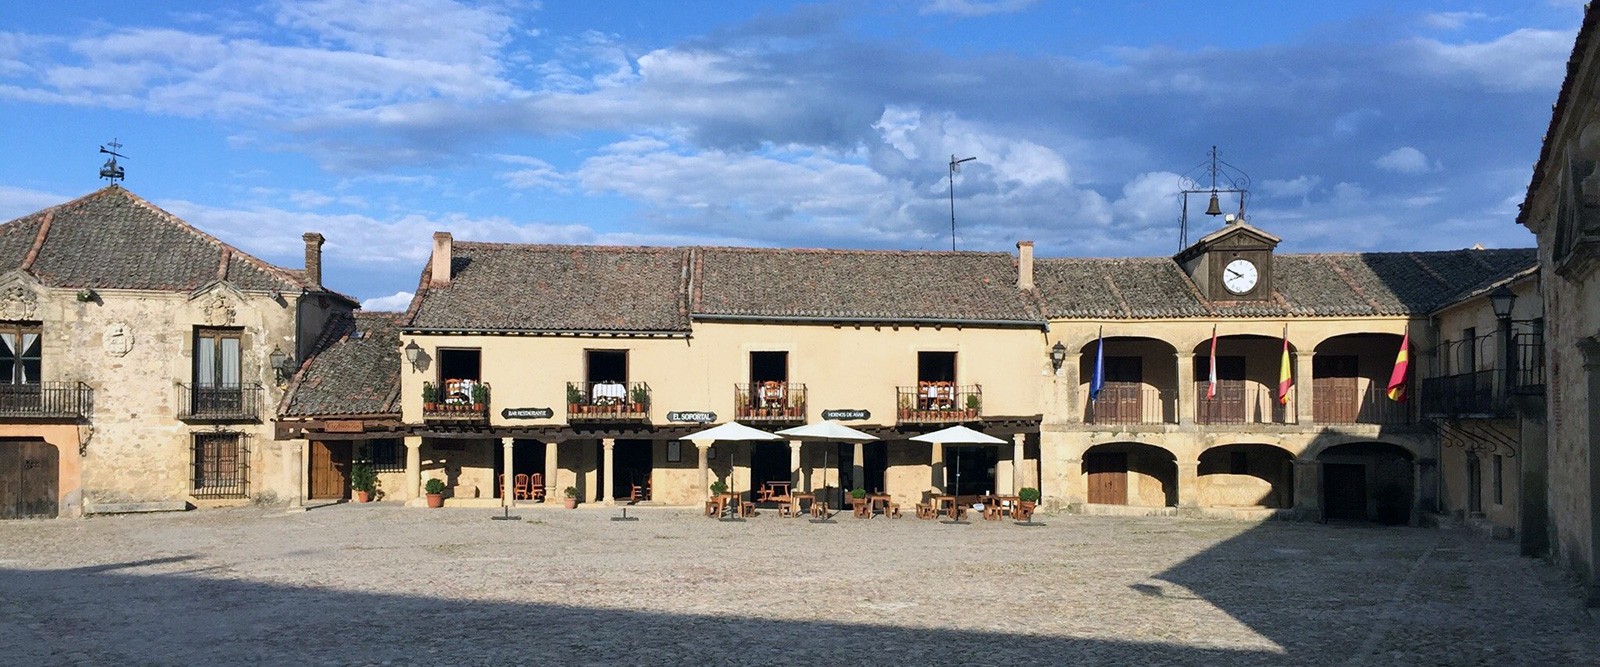 Vista terraza - Restaurante El Soportal en Pedraza, Segovia